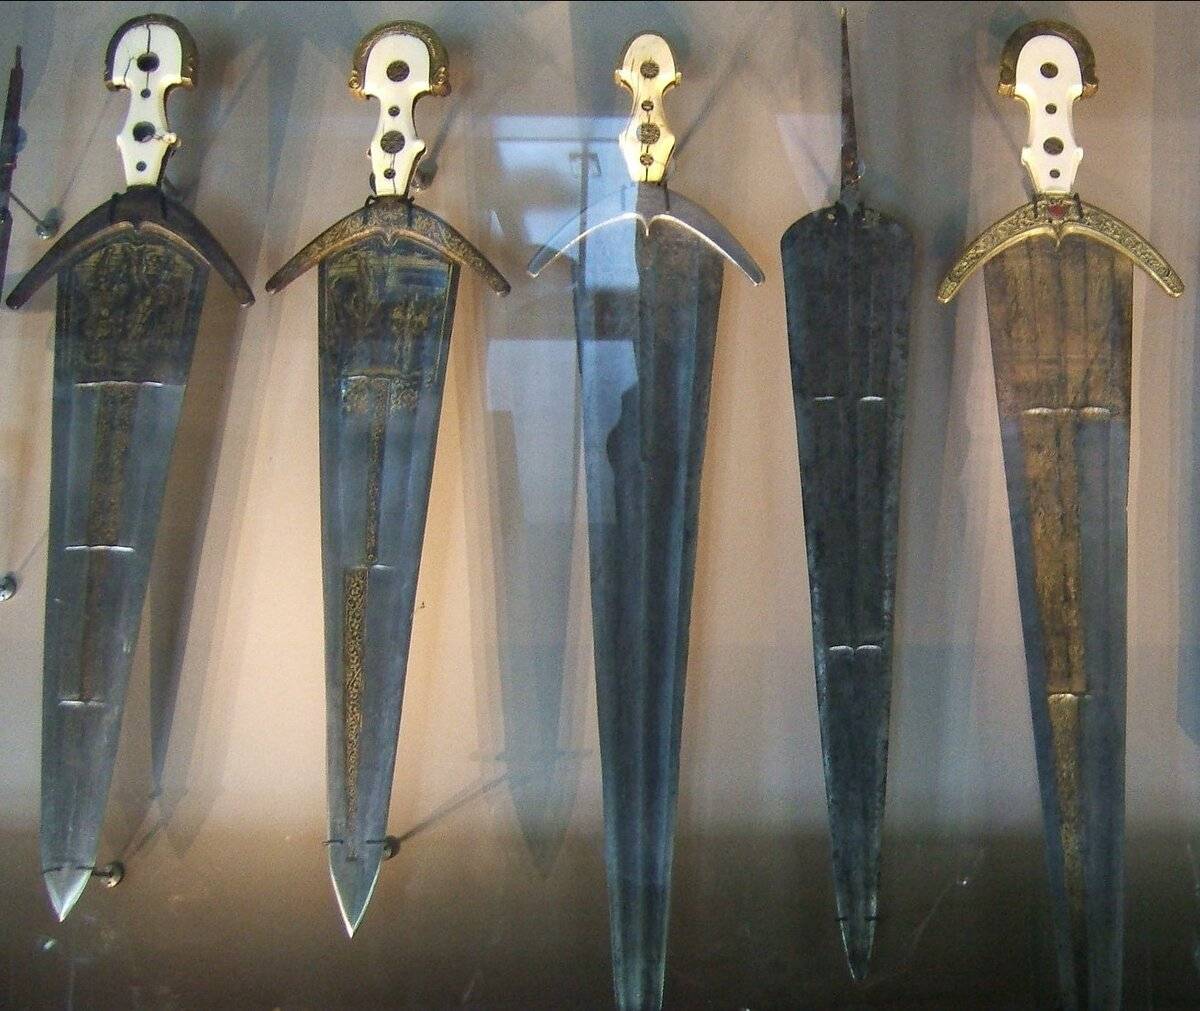 Нож стилет - итальянское холодное трехгранное оружие